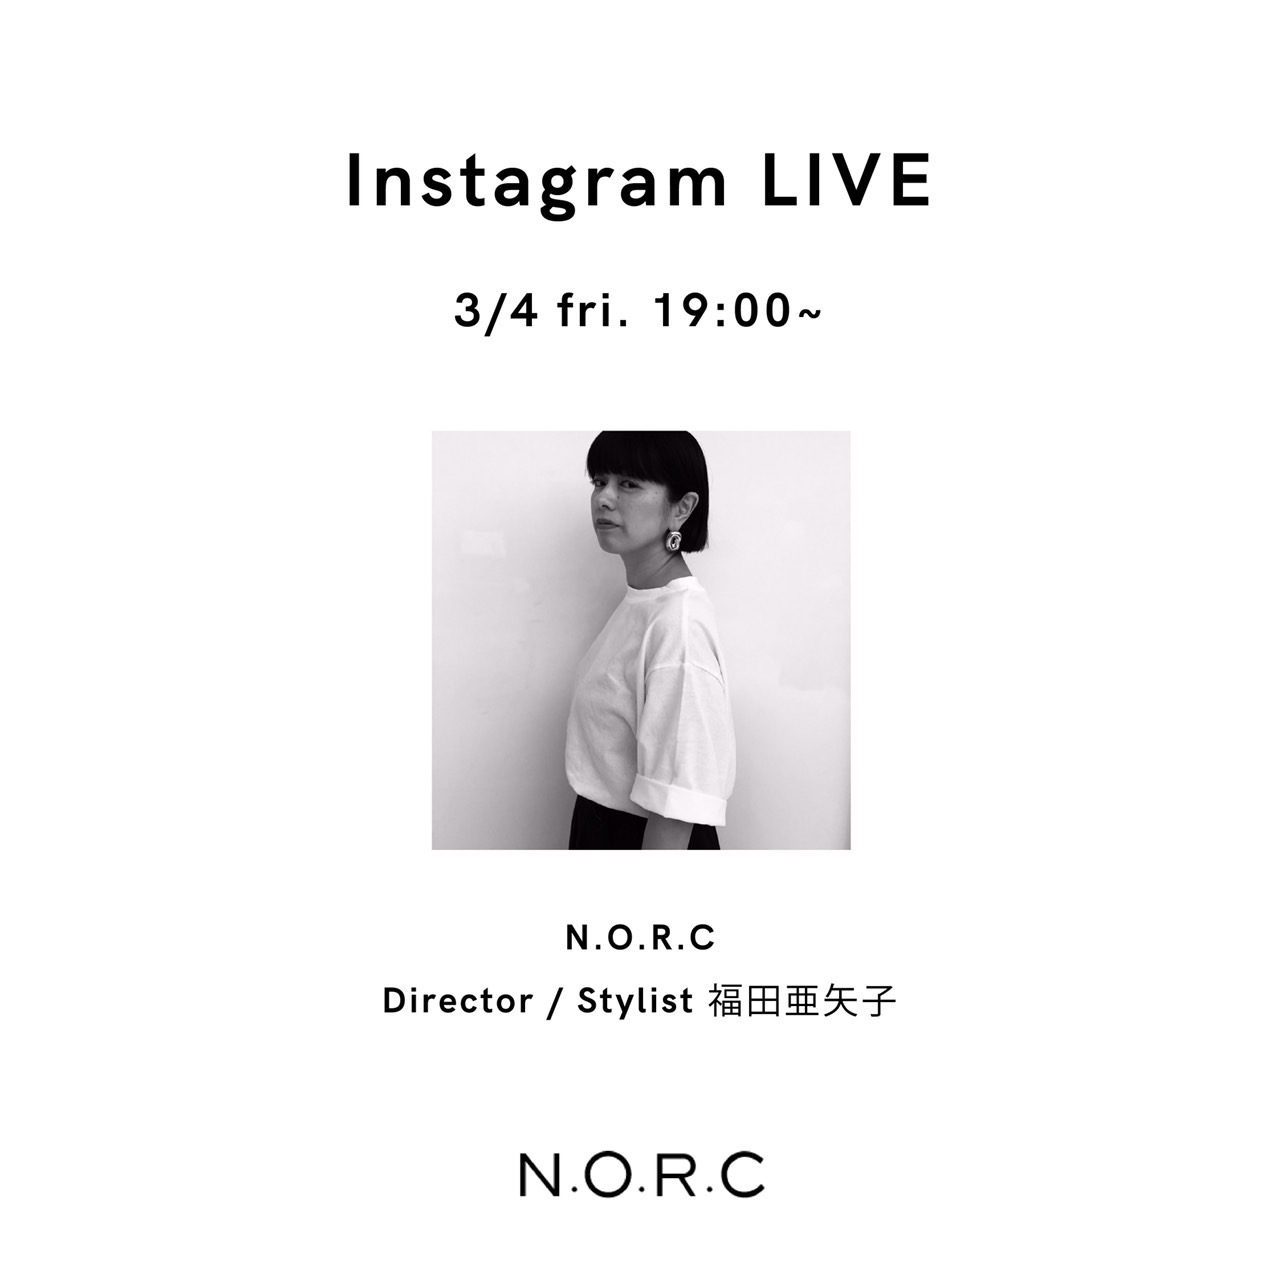 N.O.R.Cディレクター福田亜矢子によるインスタライブを行います！<br />
